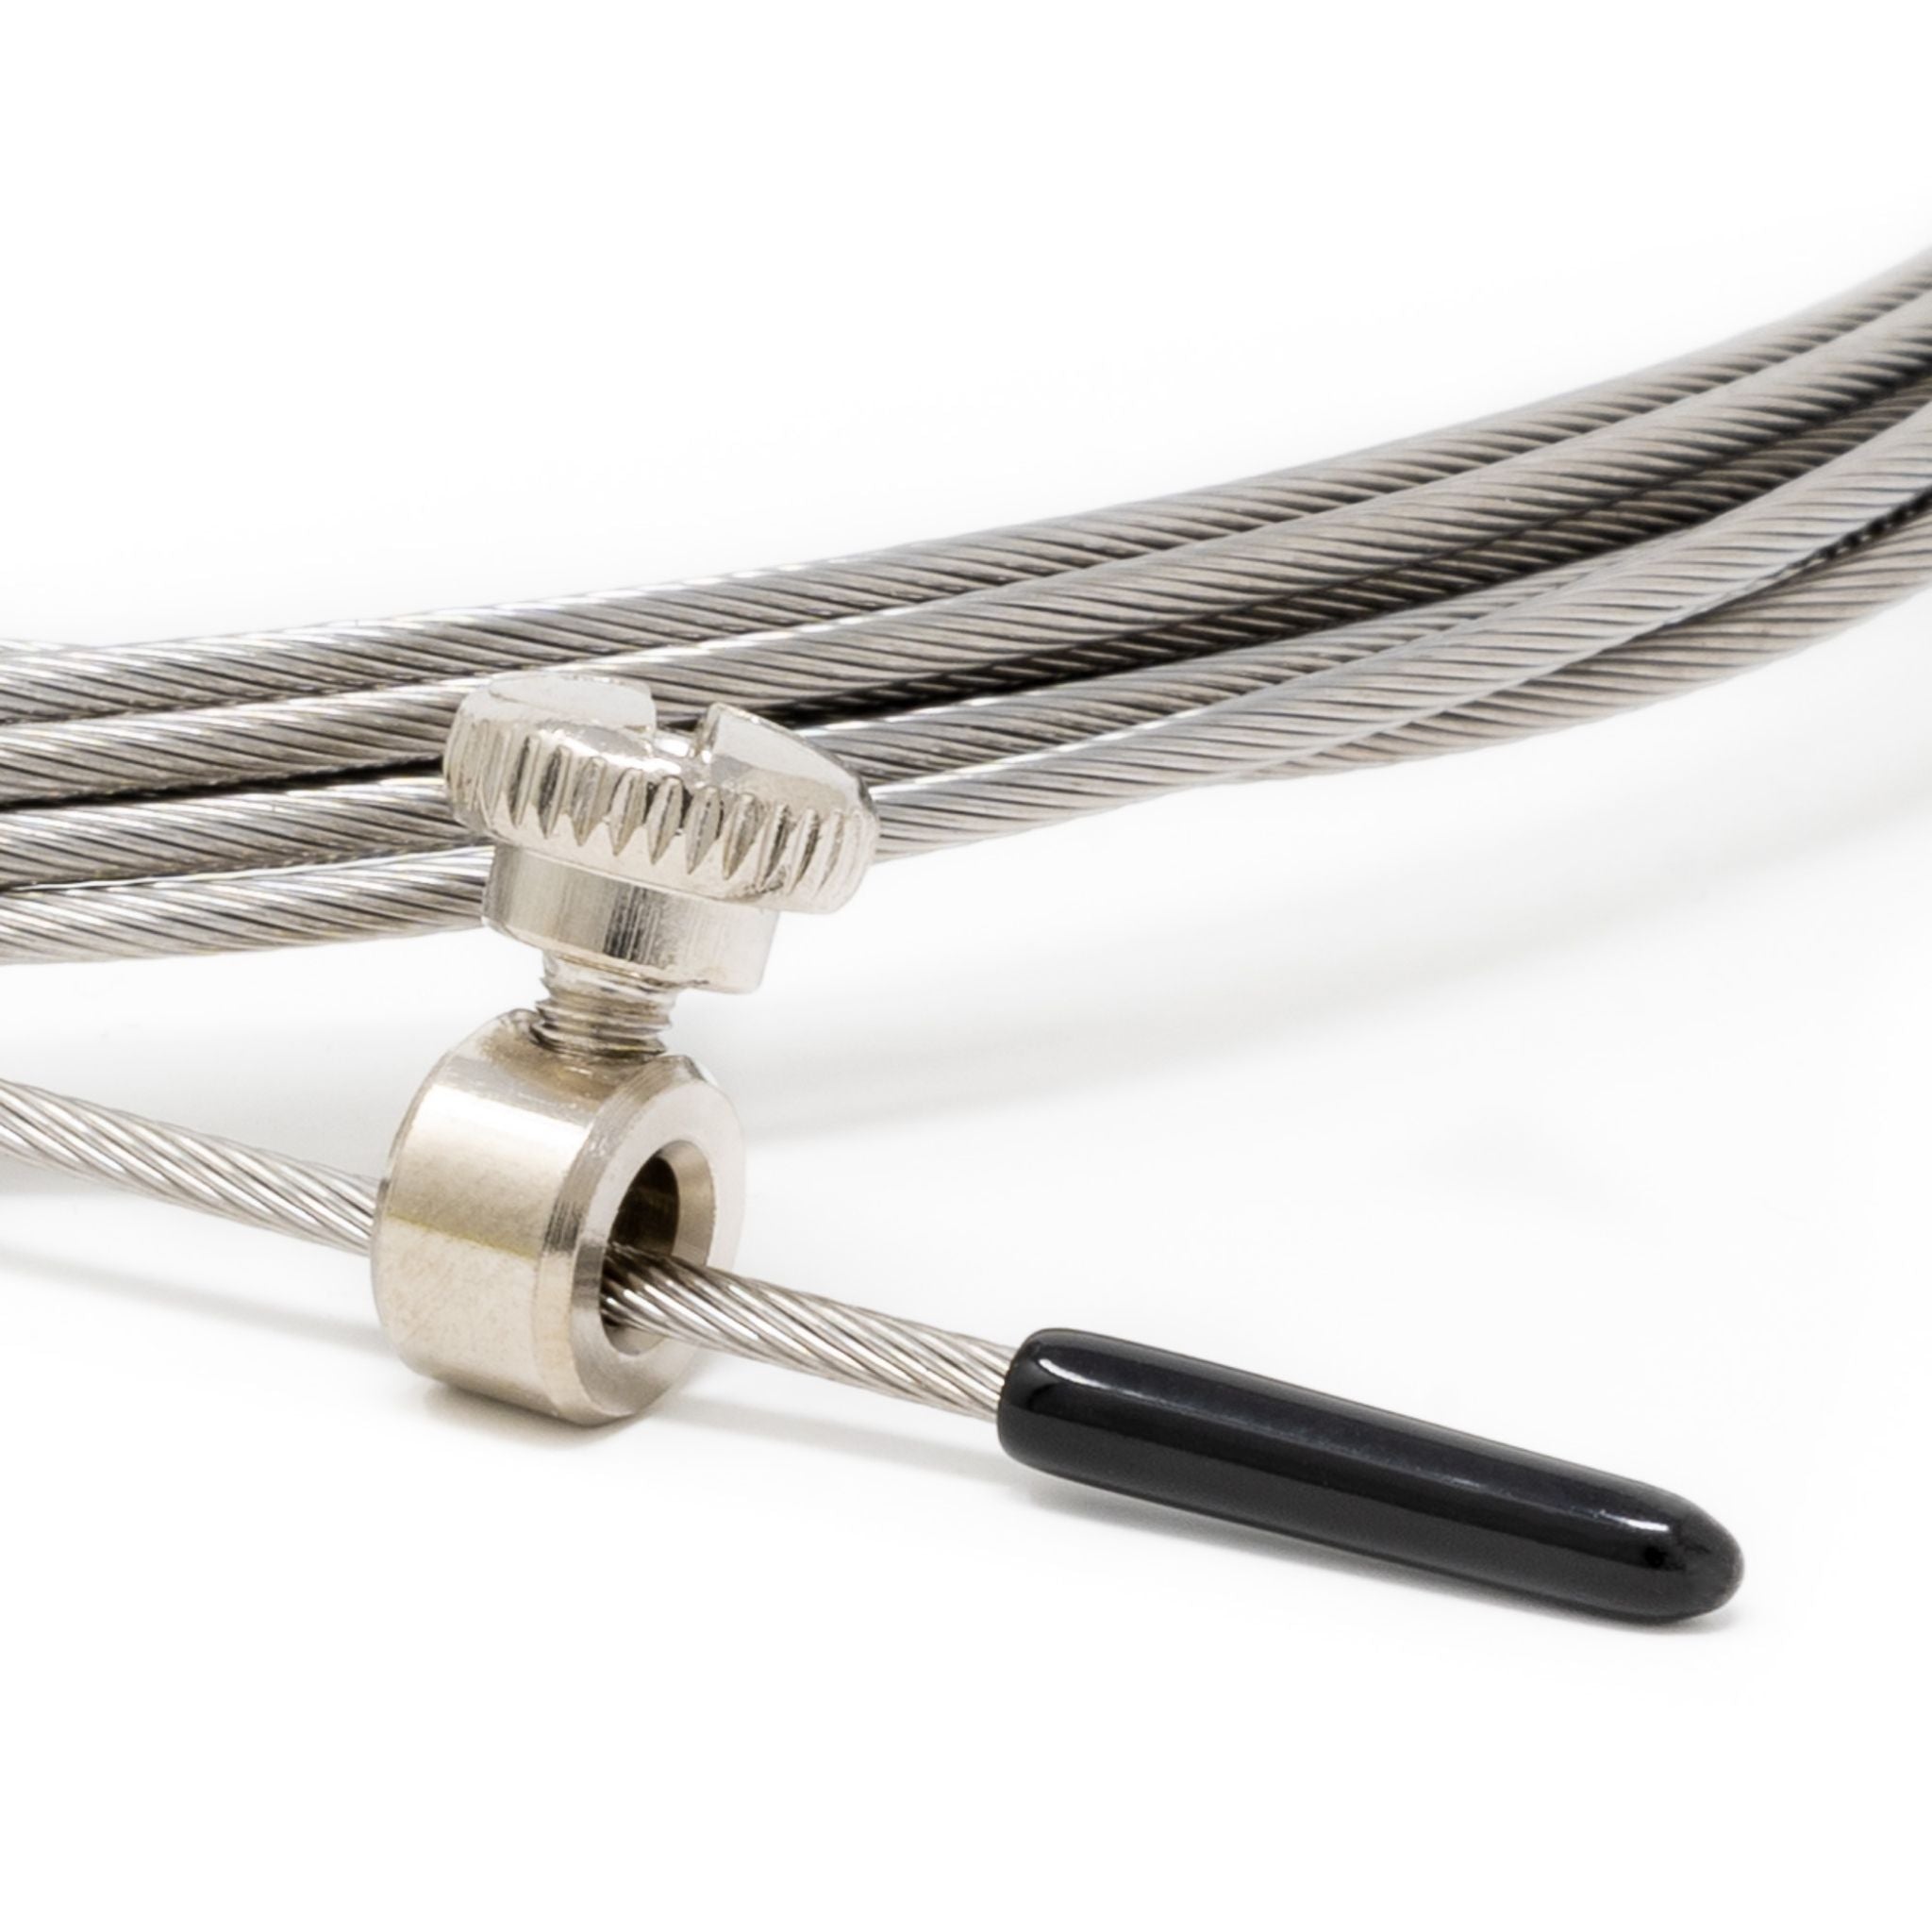 Câble de compétition 1,8 mm pour la corde Fire 2.0 – Velites France